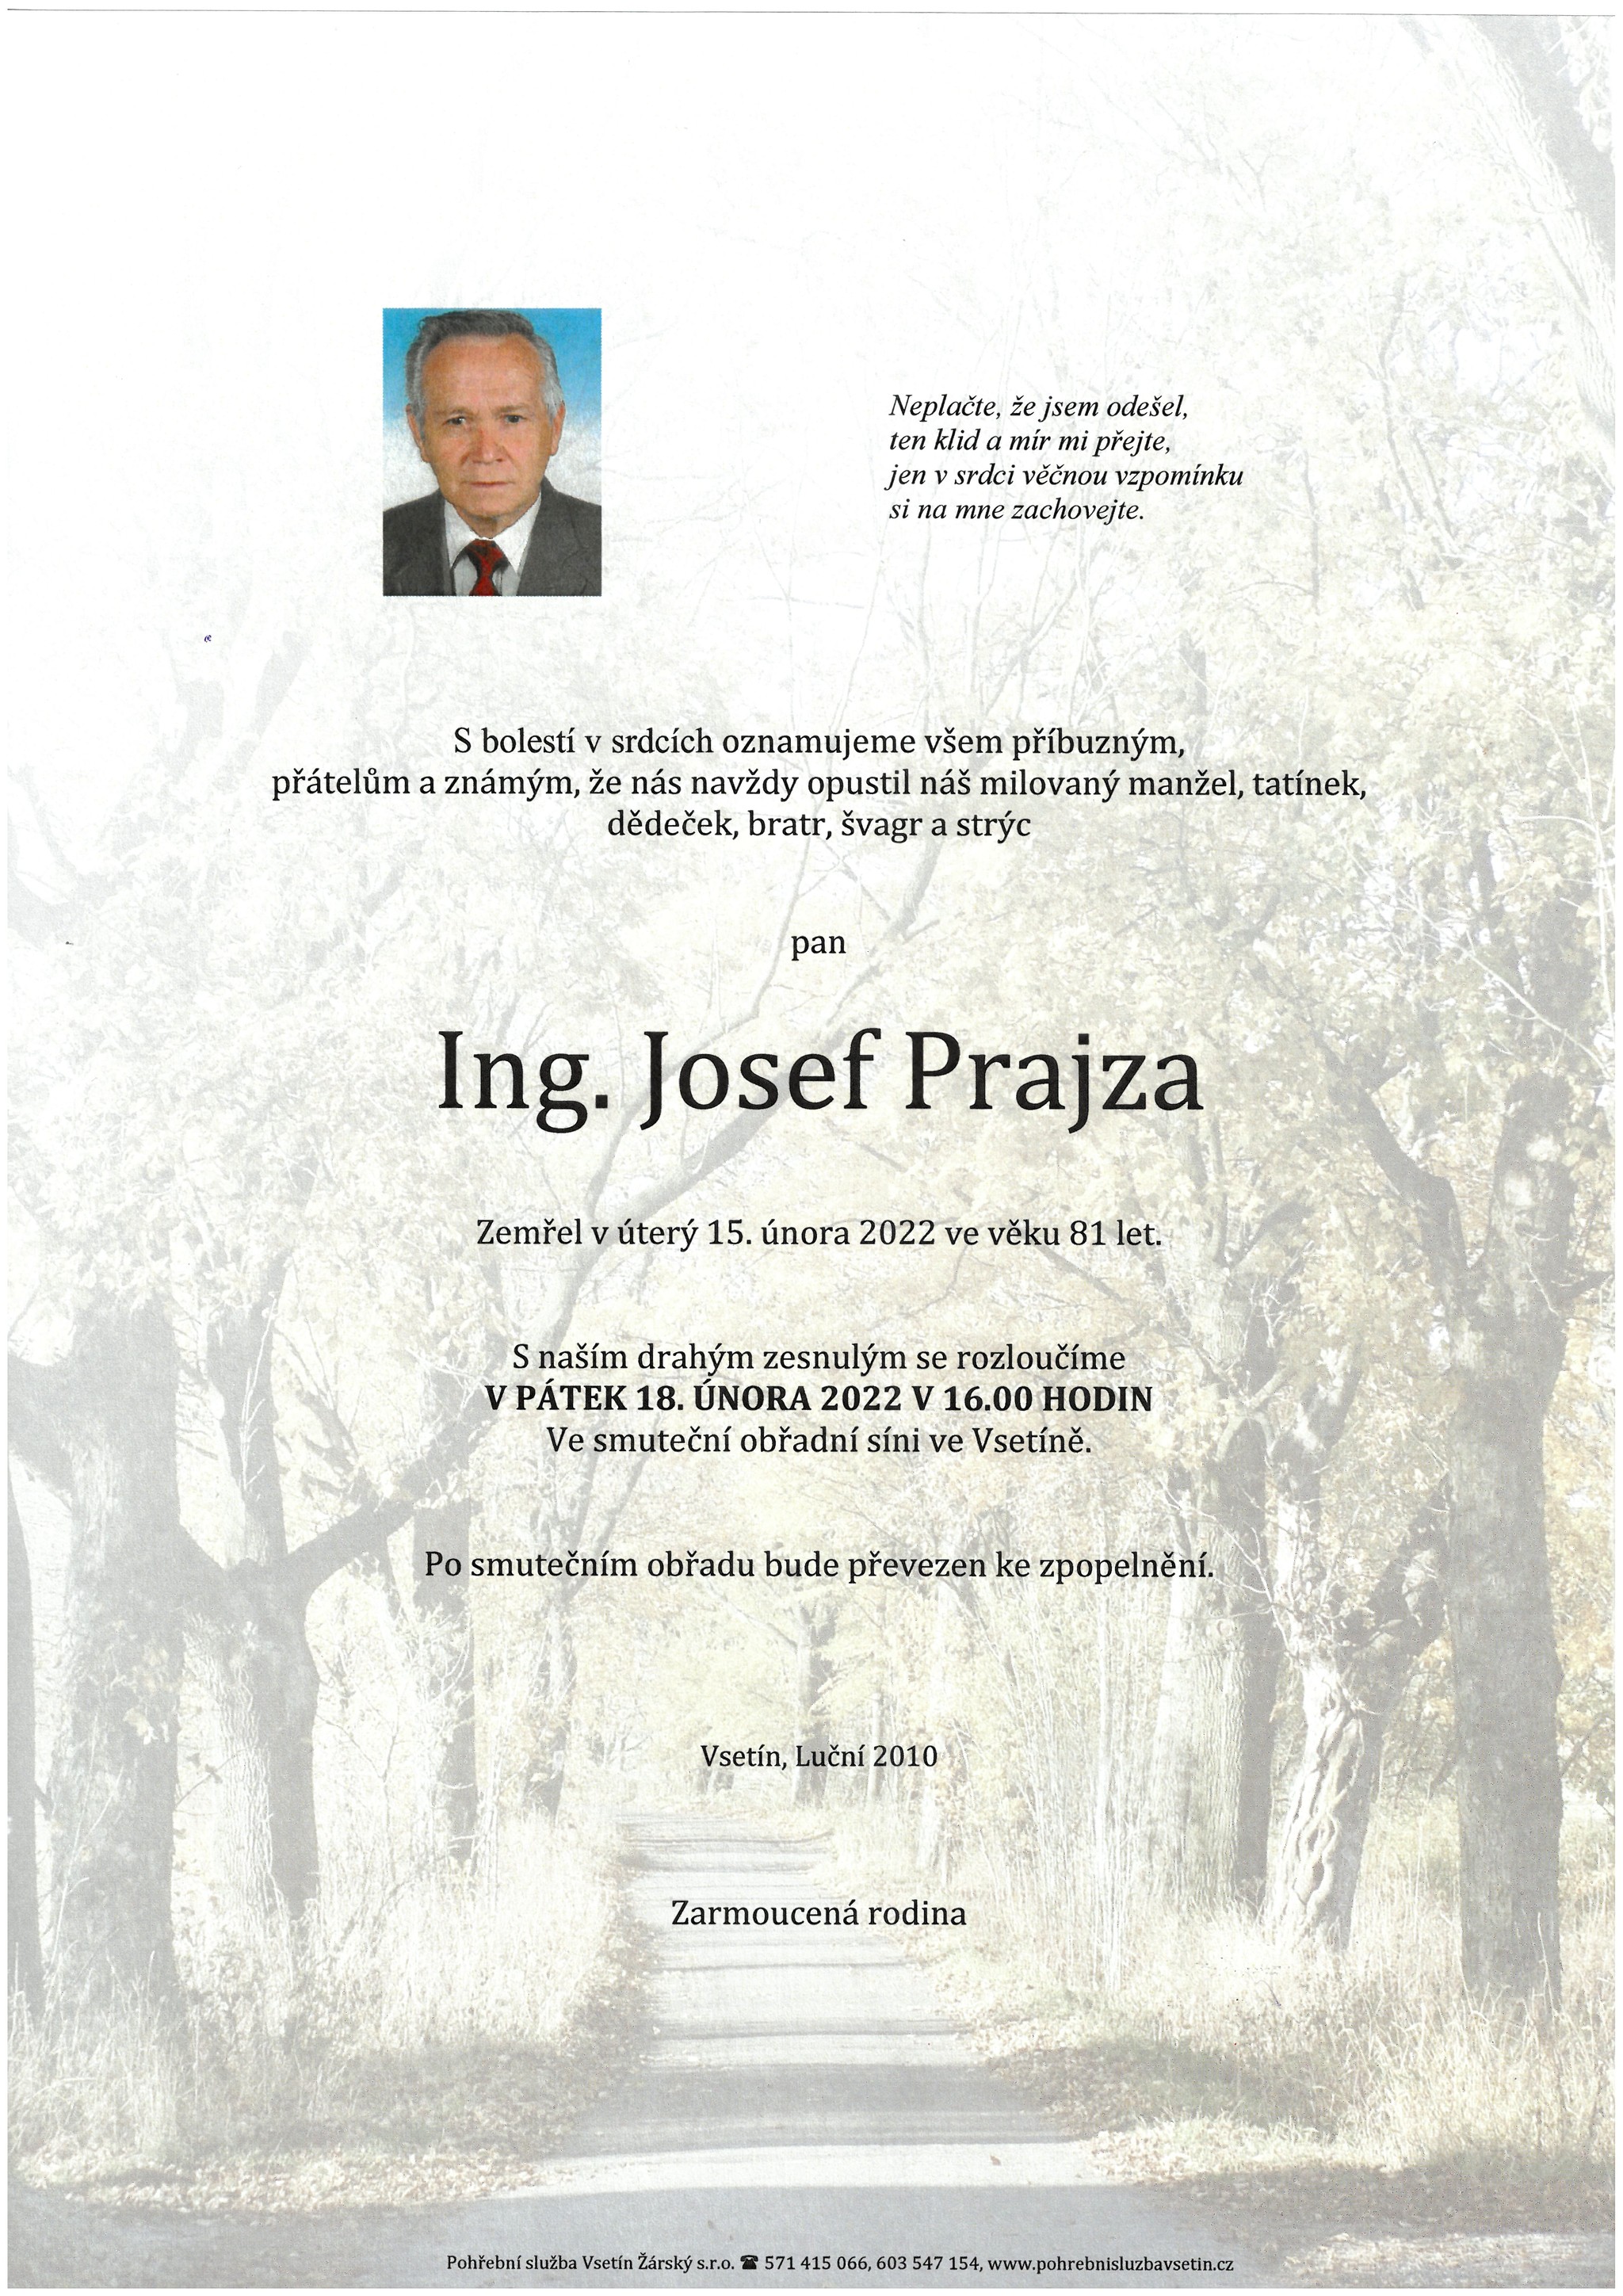 Ing. Josef Prajza